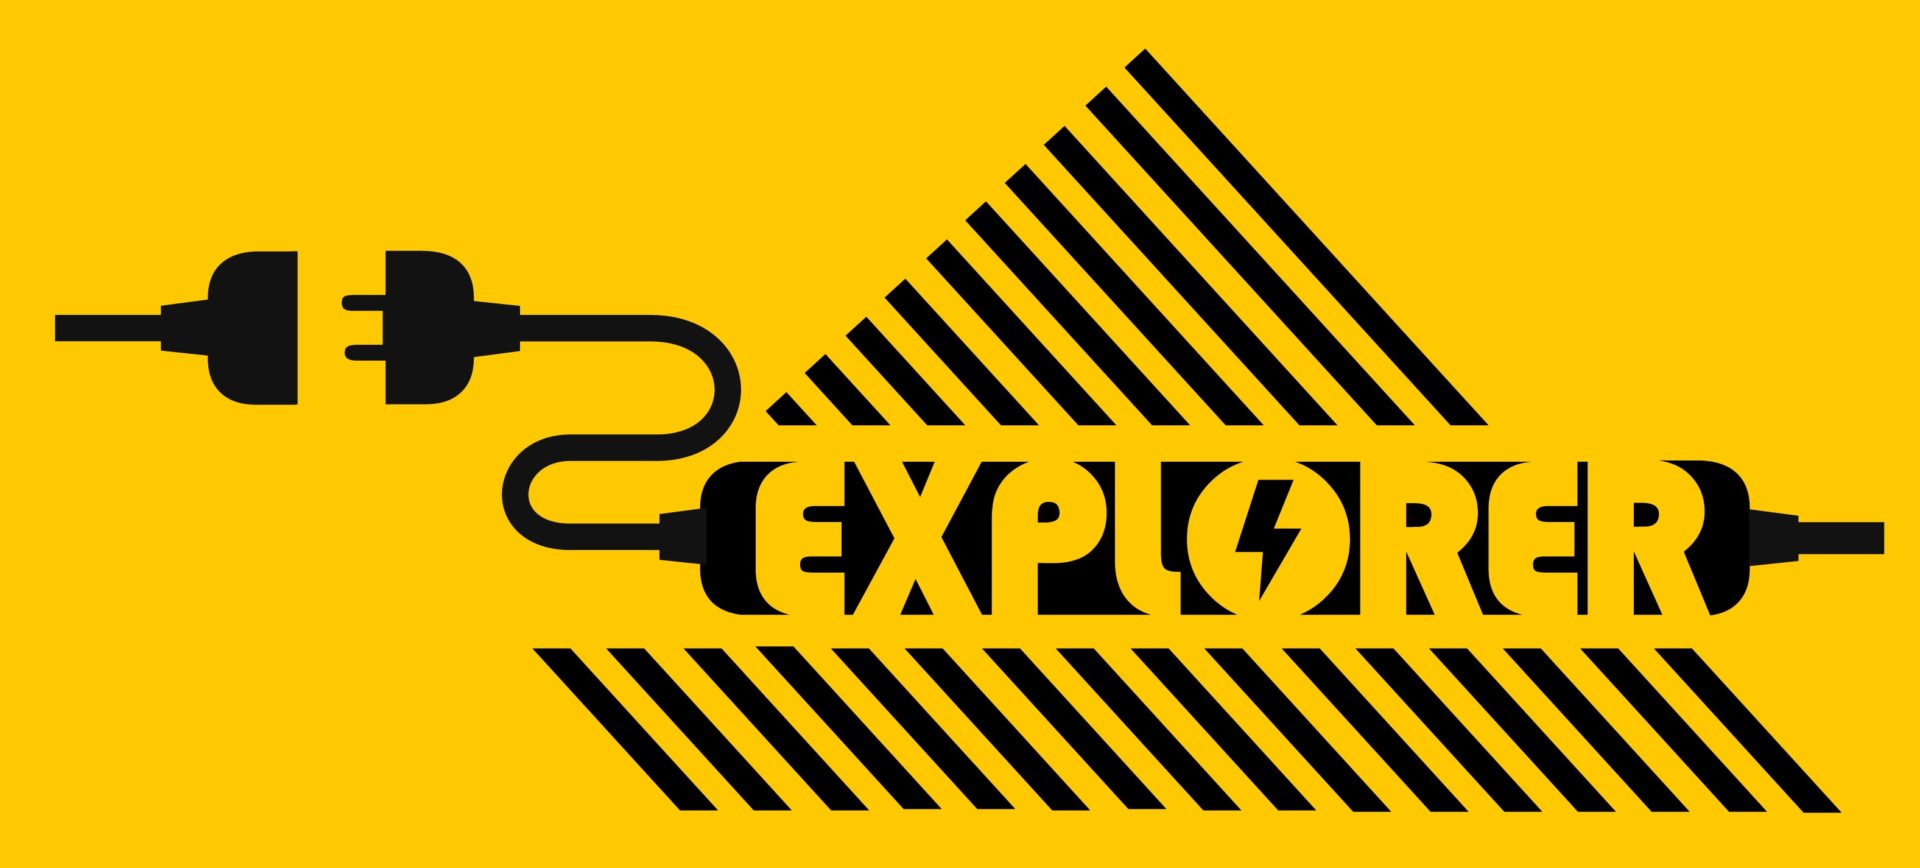 E-Explorer